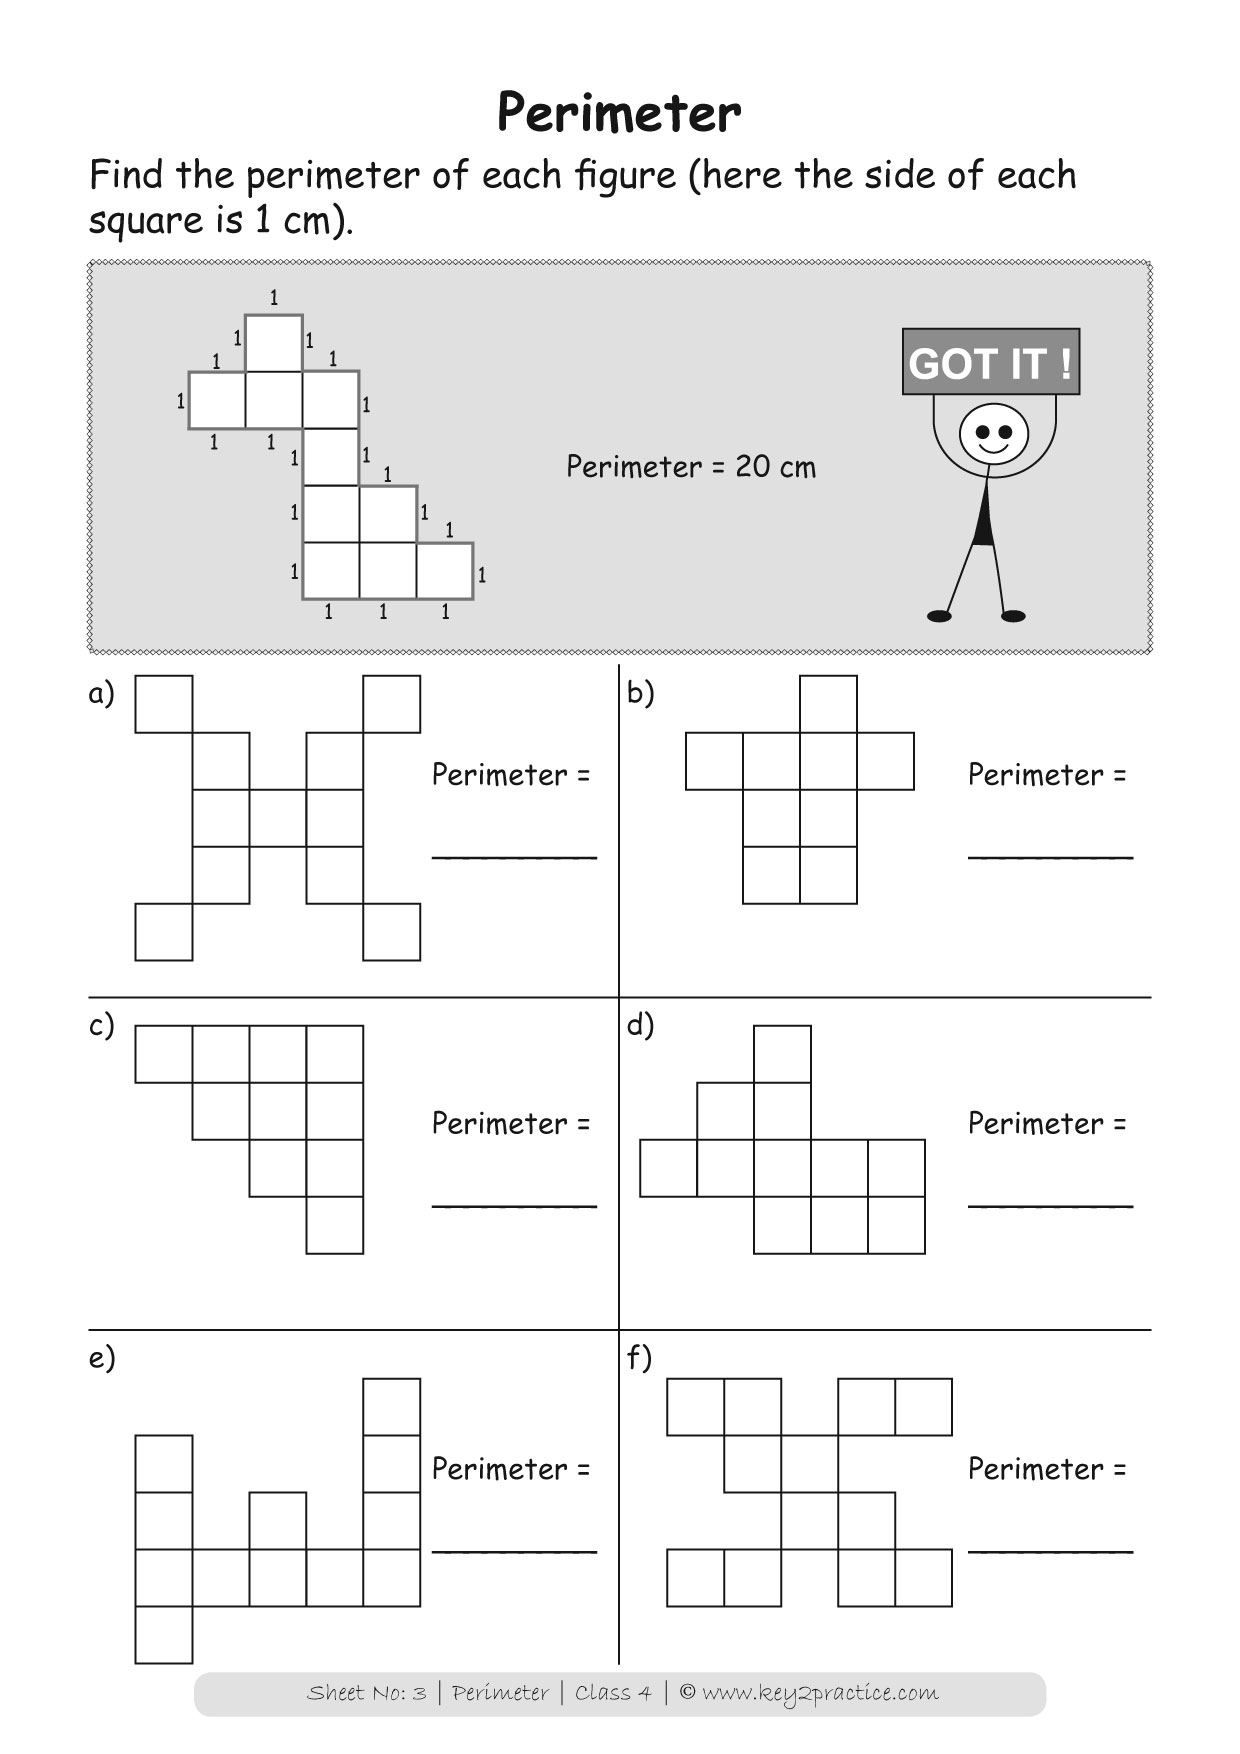 perimeter-4th-grade-worksheets